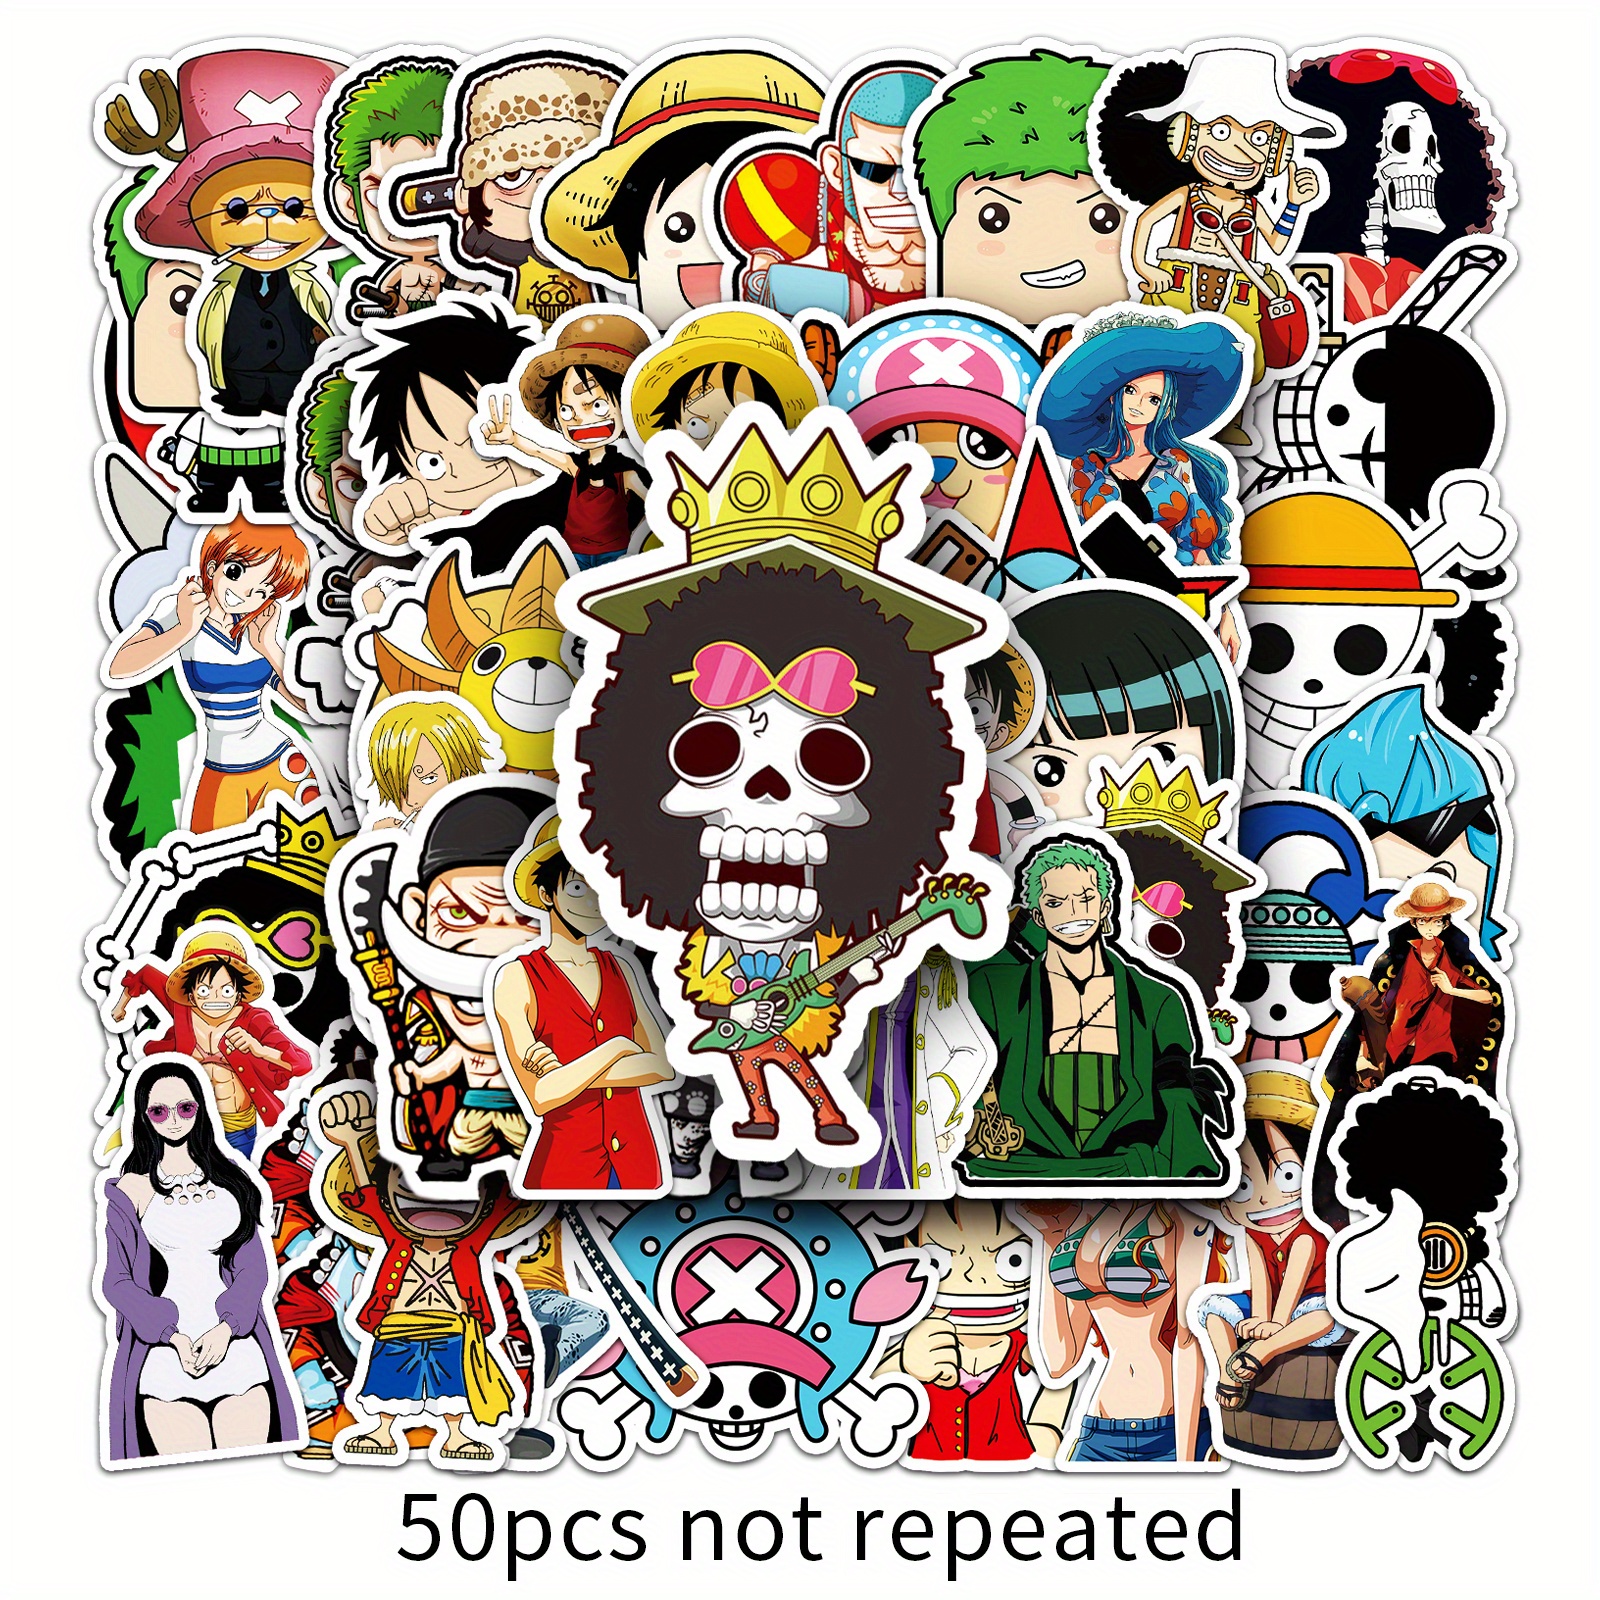 Stickers Skateboard One Piece, Stickers Anime One Piece